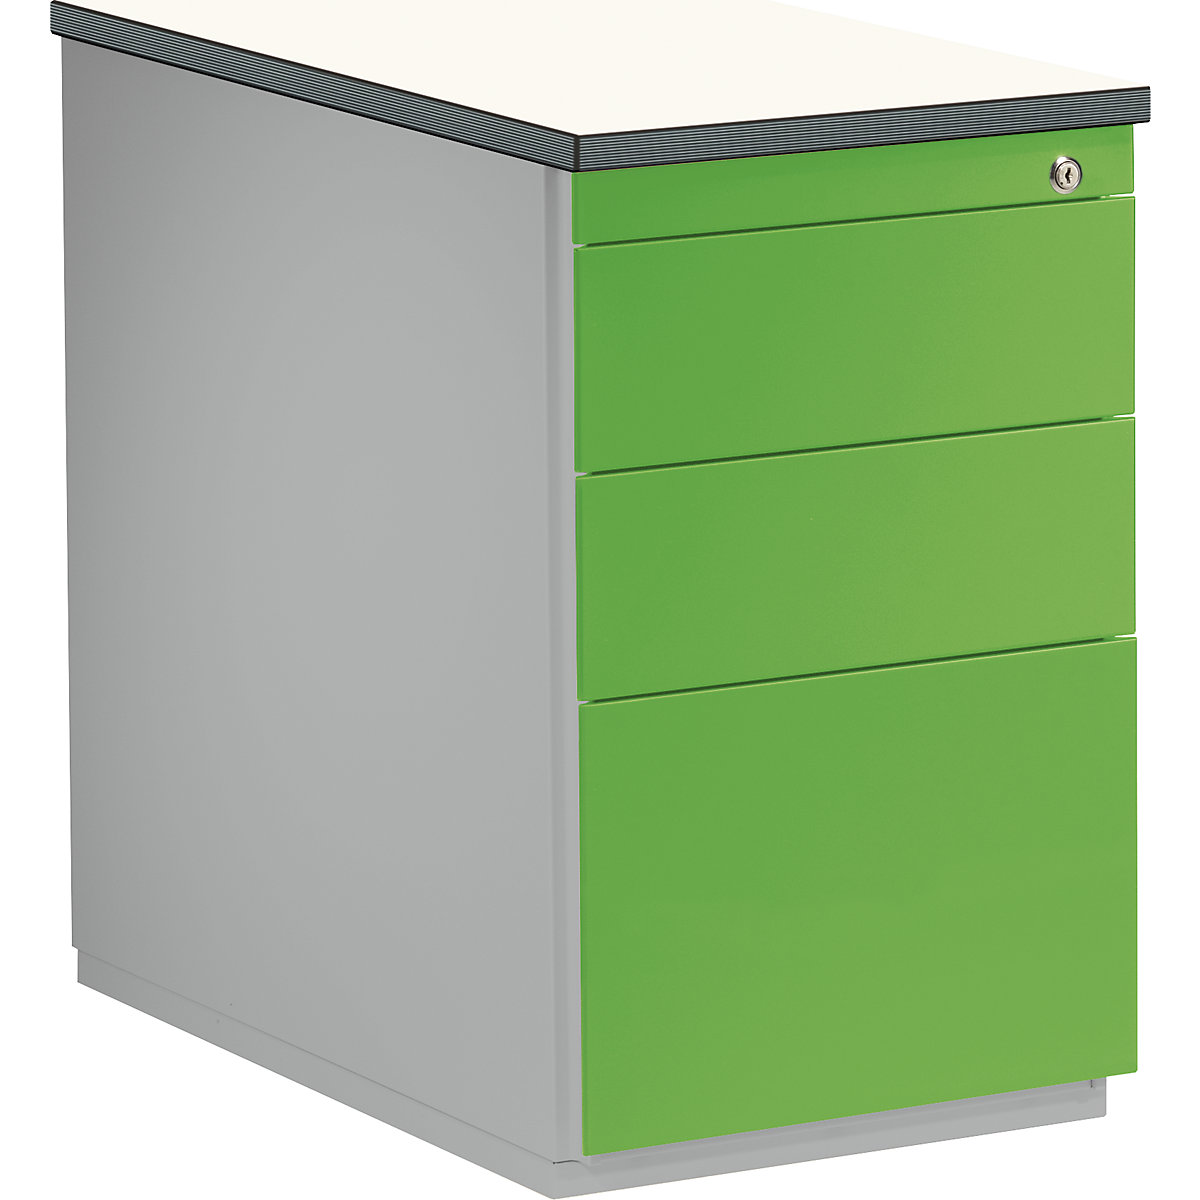 Zásuvkový kontejner – mauser, v x h 720 x 800 mm, 2 zásuvky na materiál, 1 kartotéka pro závěsné složky, bílý hliník / zelenožlutá / bílá-12